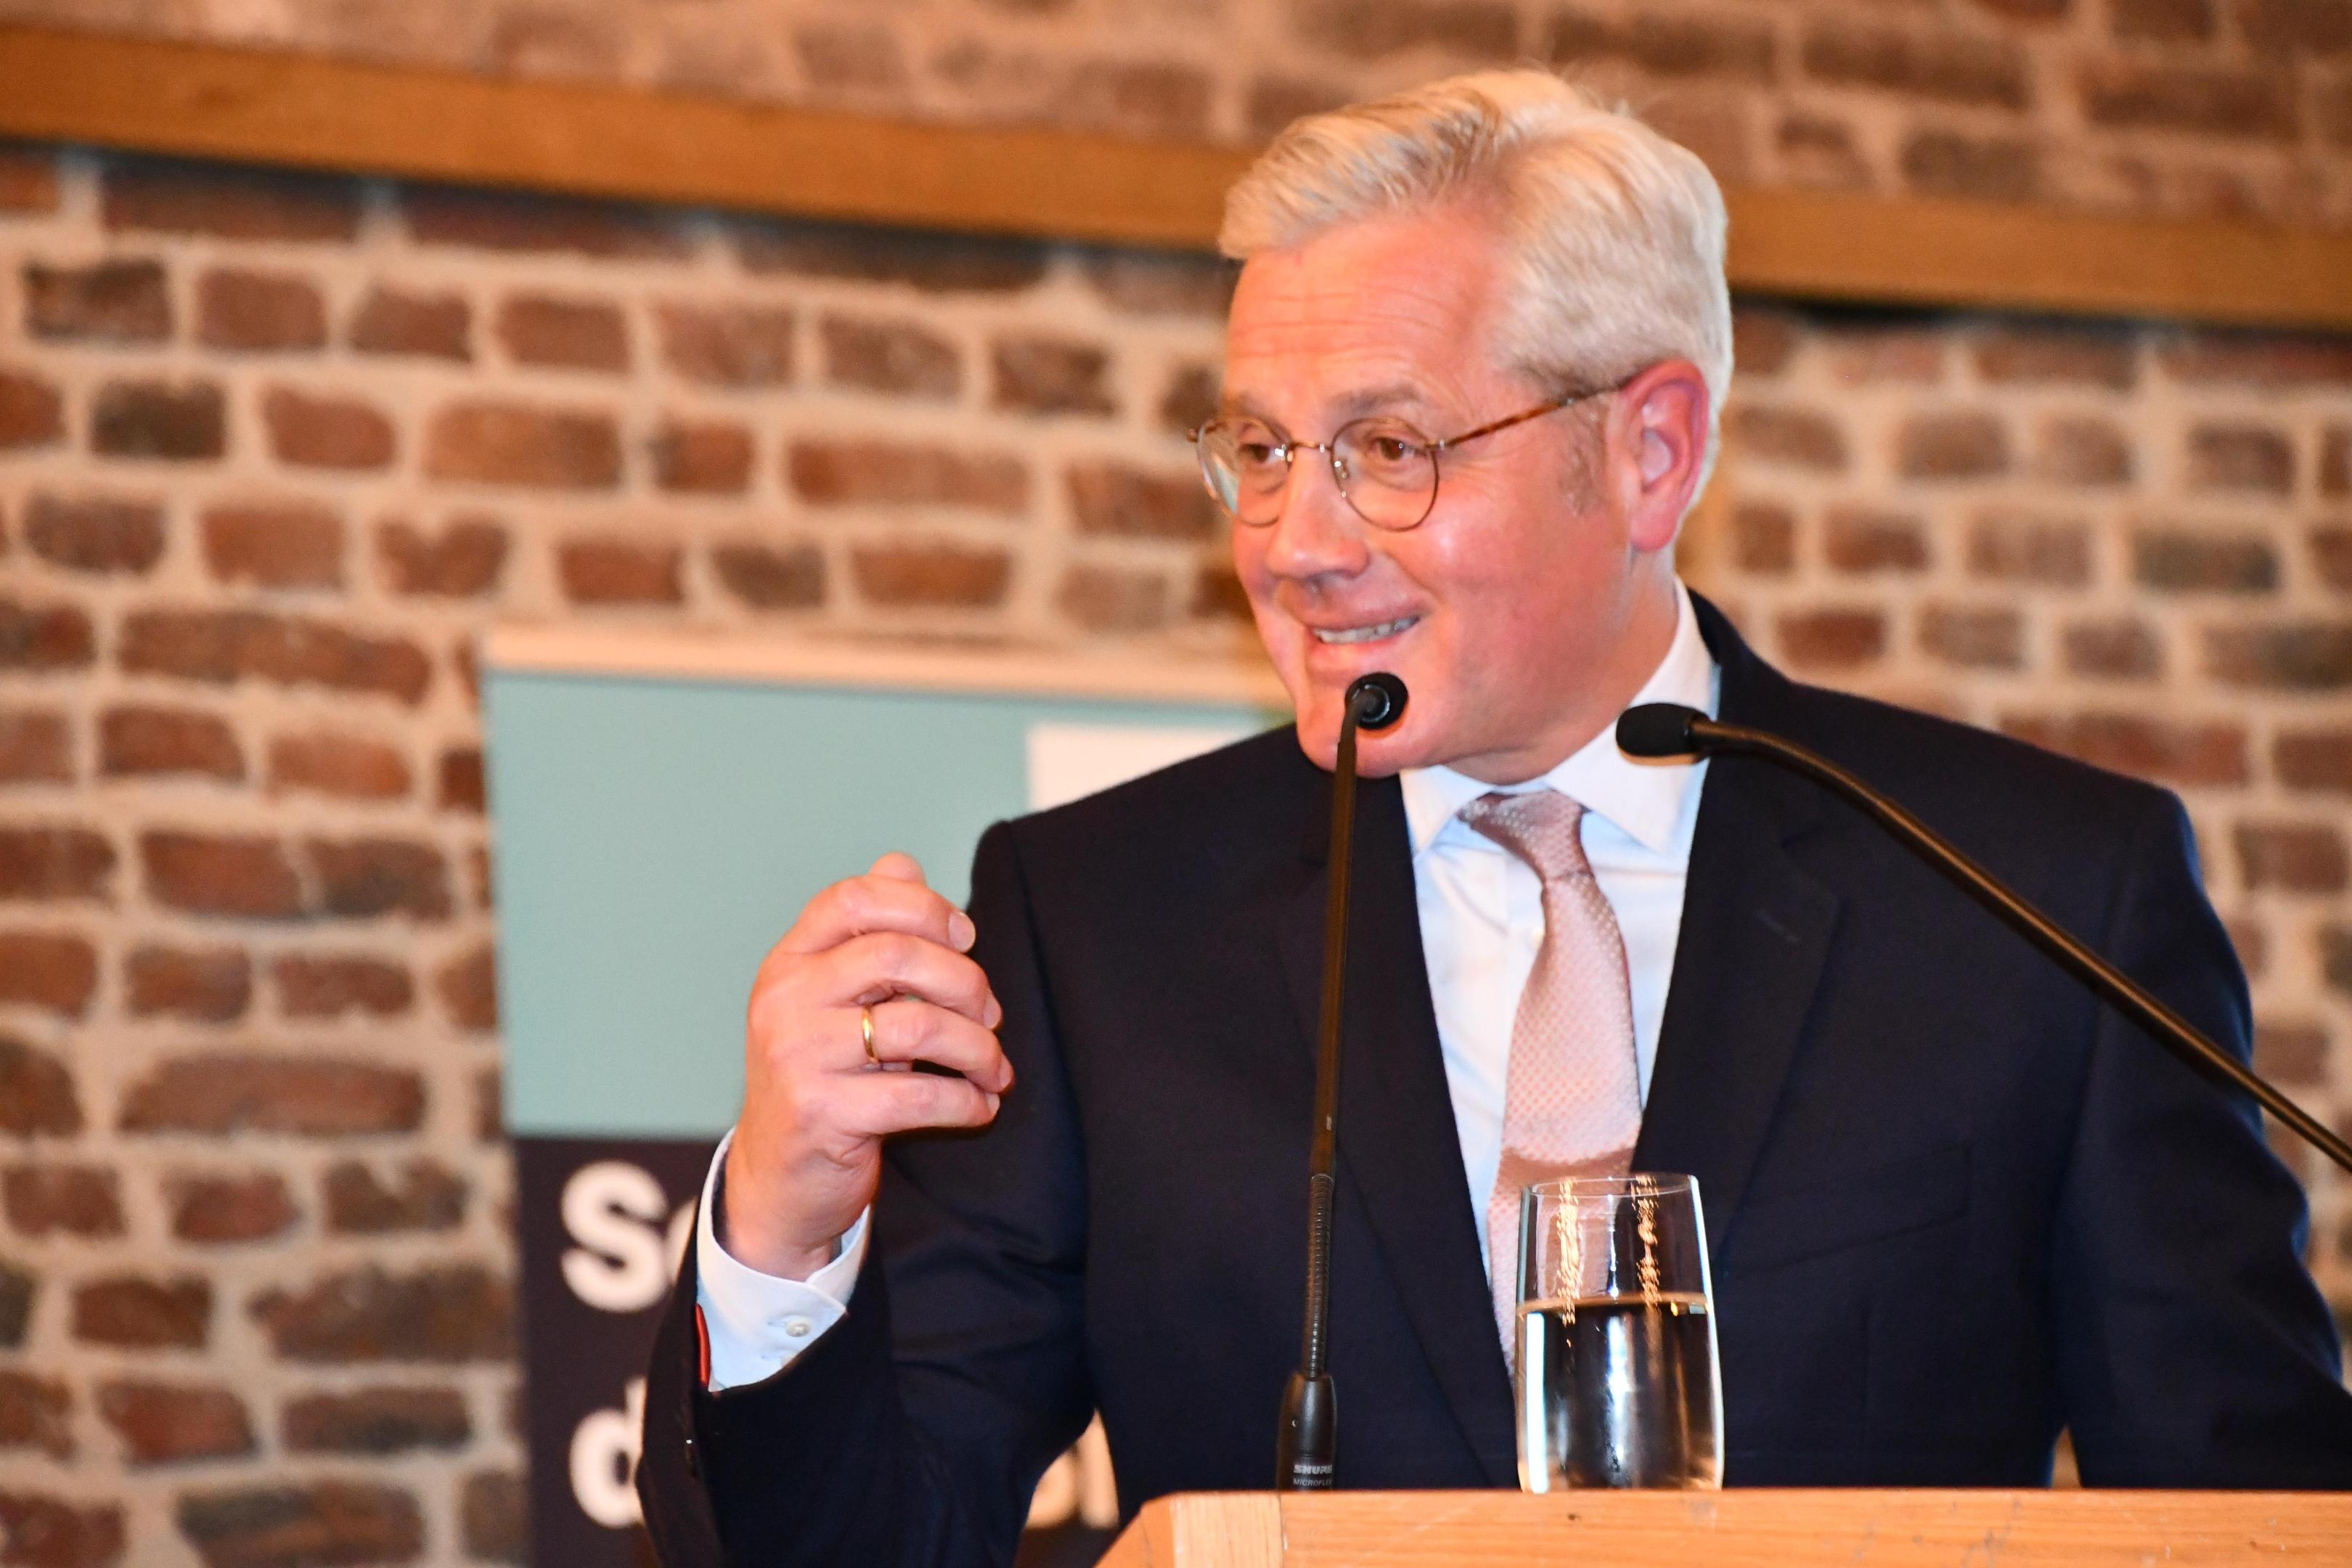 Gastredner Dr. Norbert Röttgen sprach zum Thema "Geopolitische Herausforderungen des Westens".